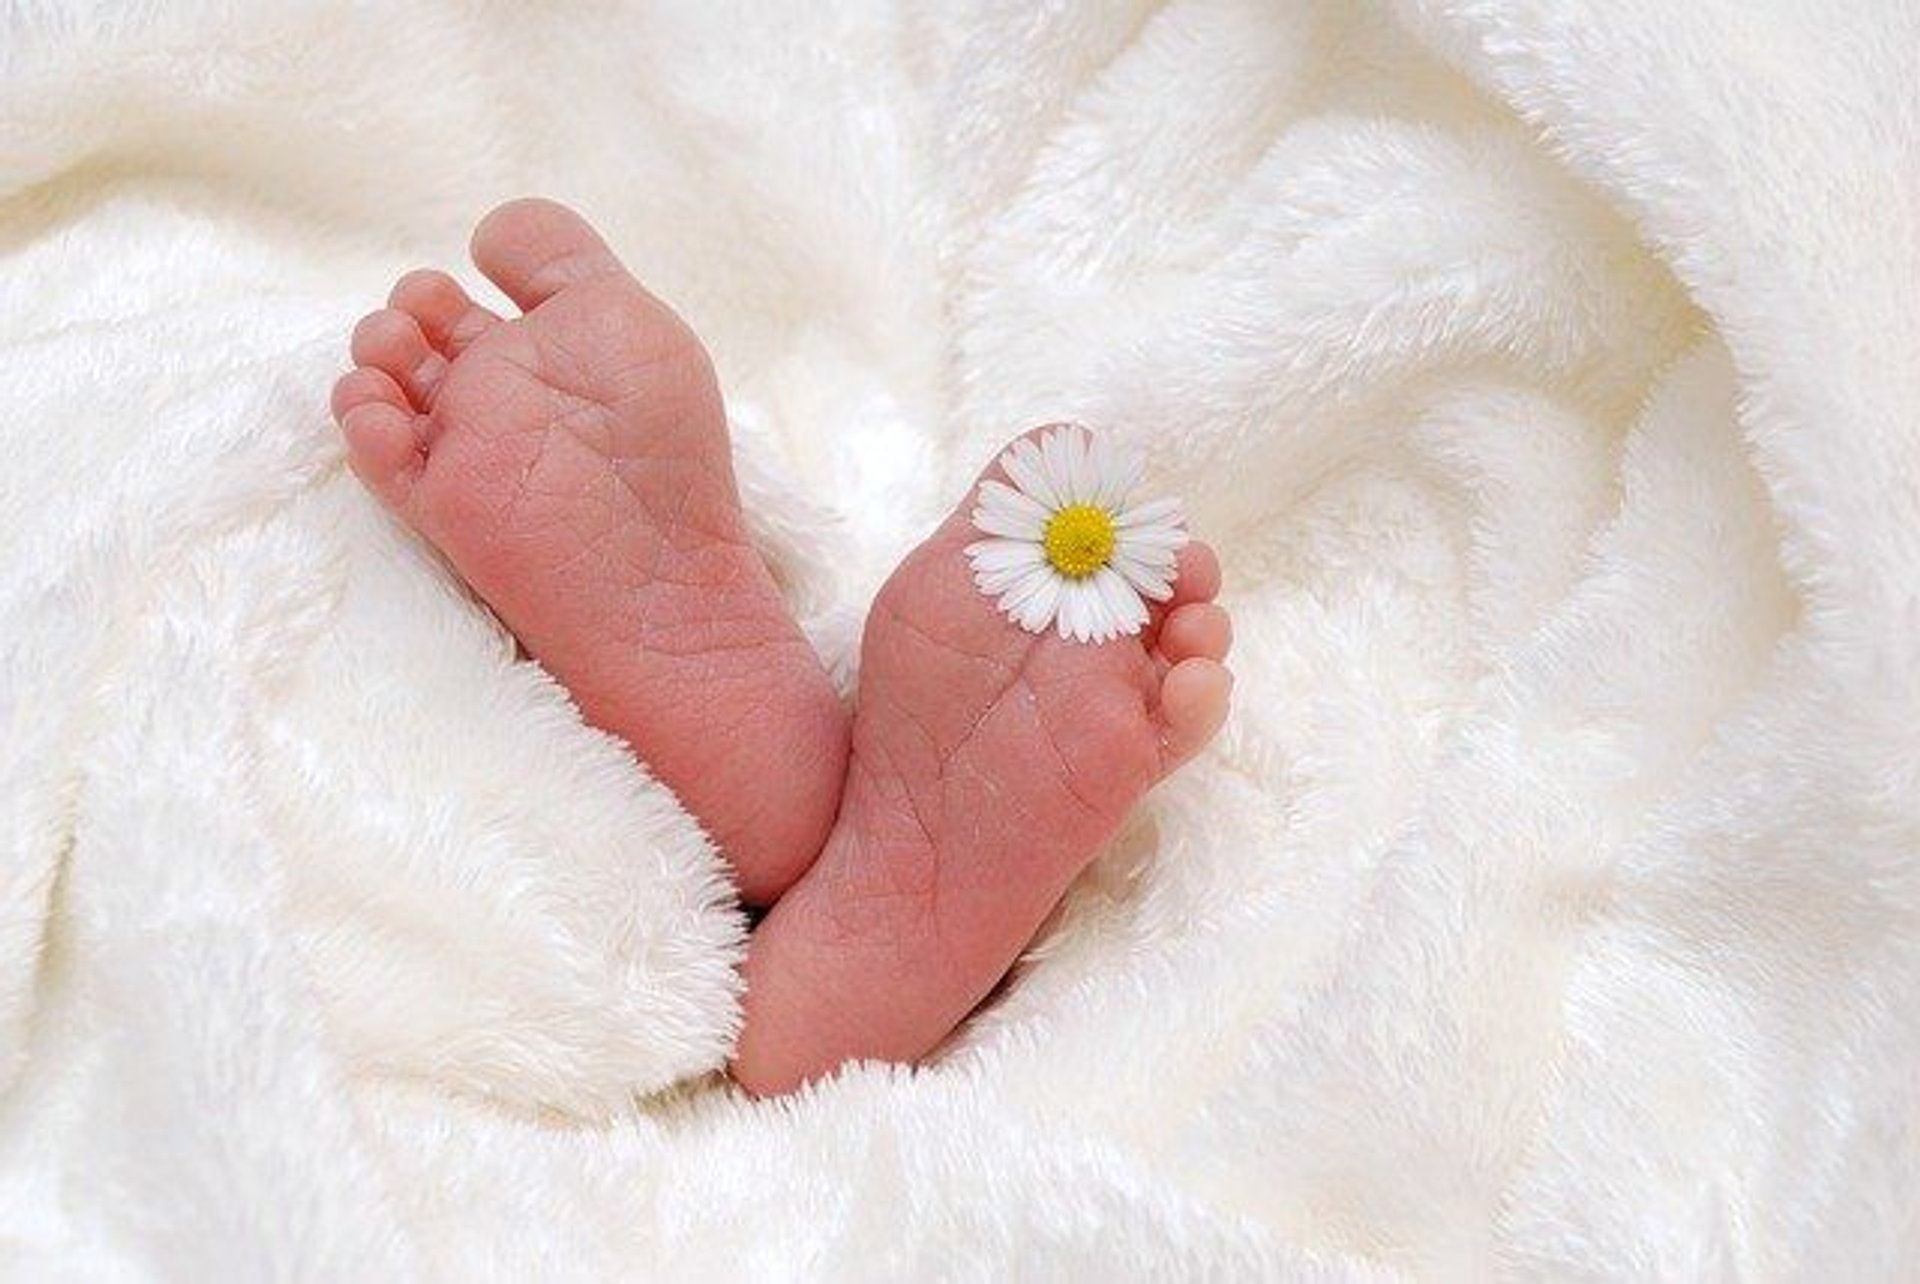 Wrodzona stopa płaska – przyczyny, objawy, diagnostyka i leczenie